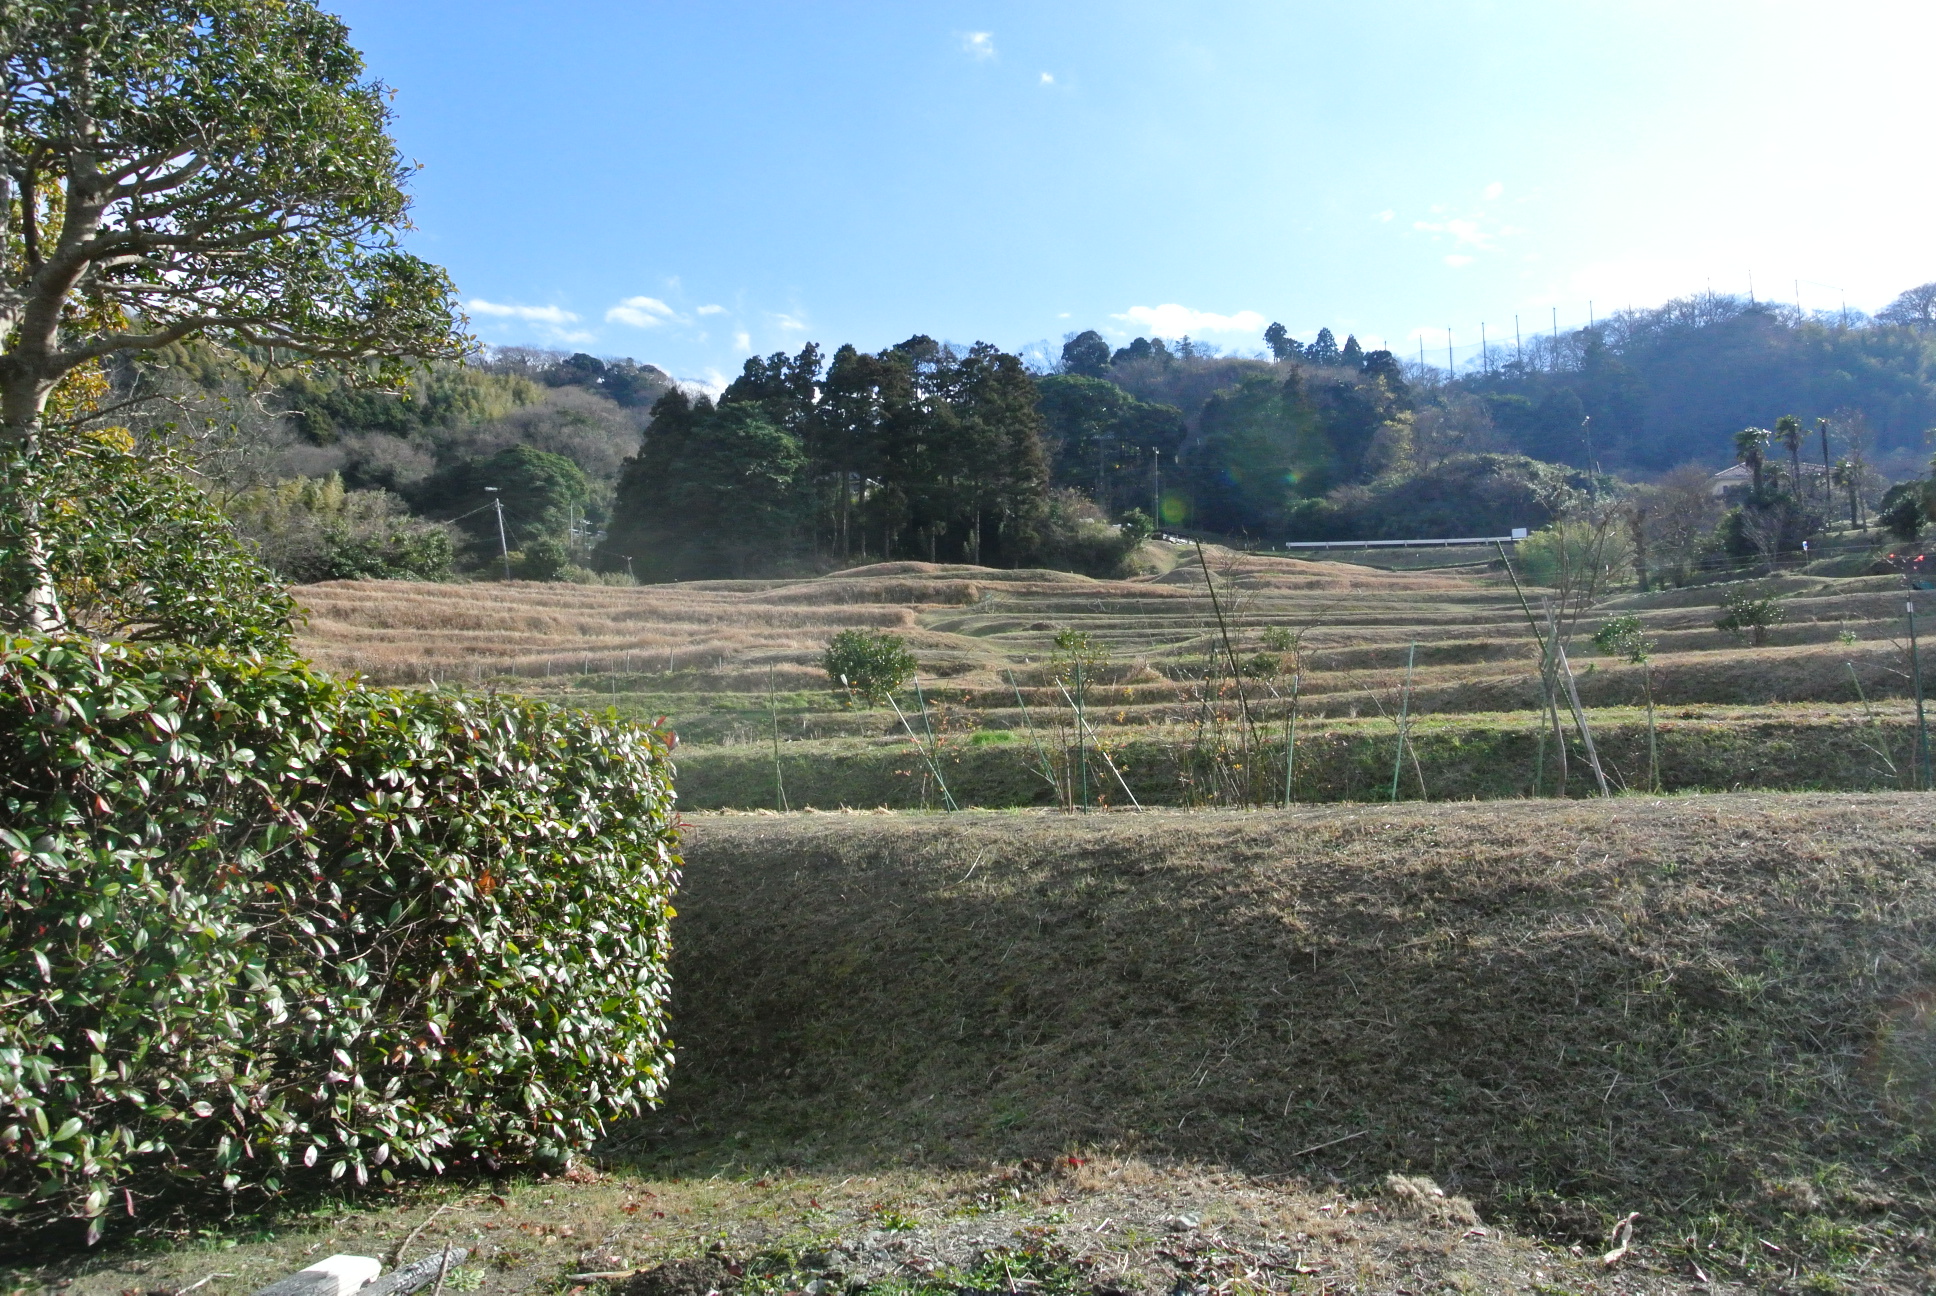 和か菜がある上山口エリアは、棚田で有名だ。